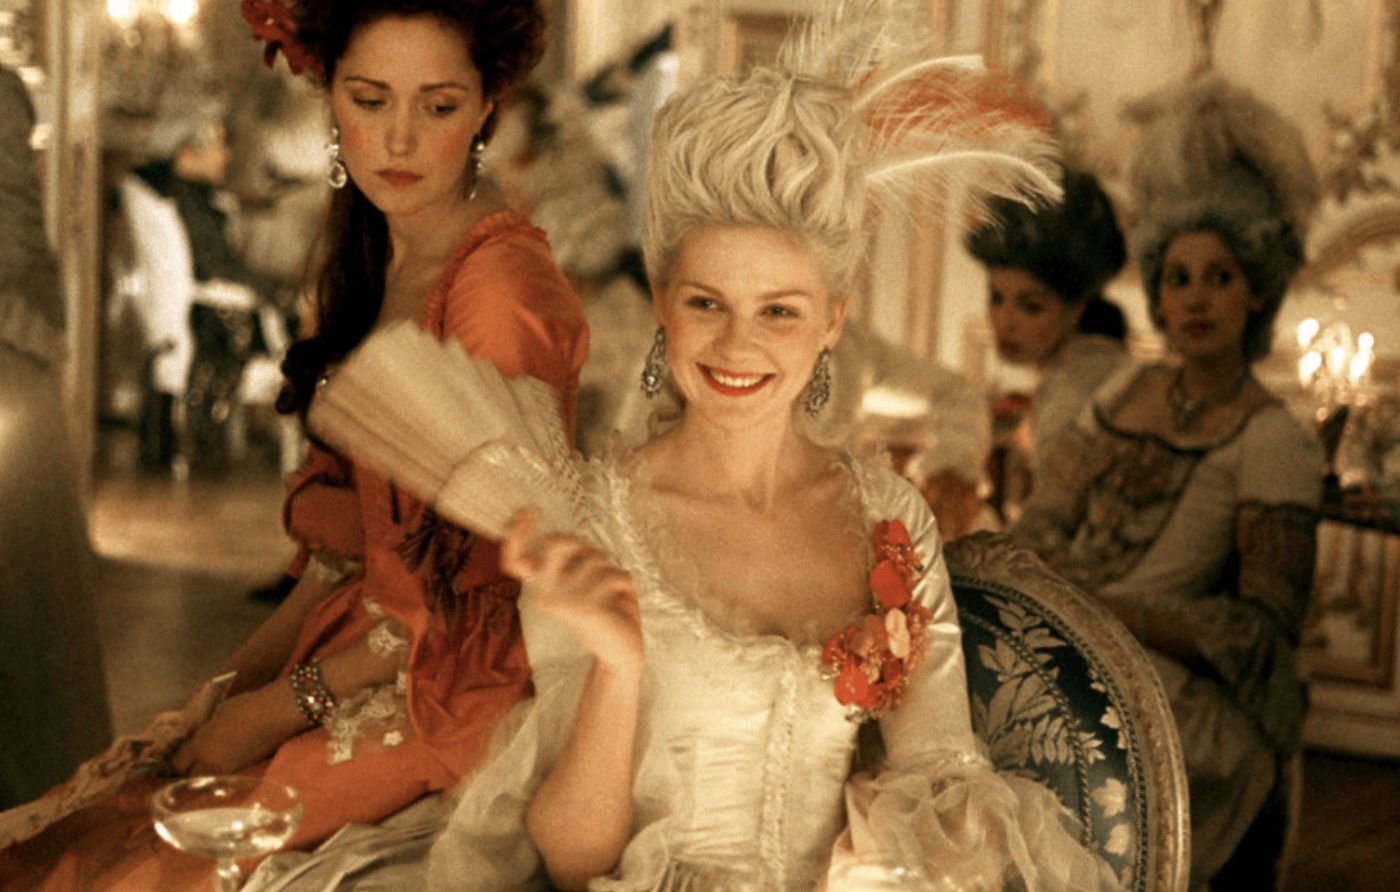 Marie Antoinette (2006) still